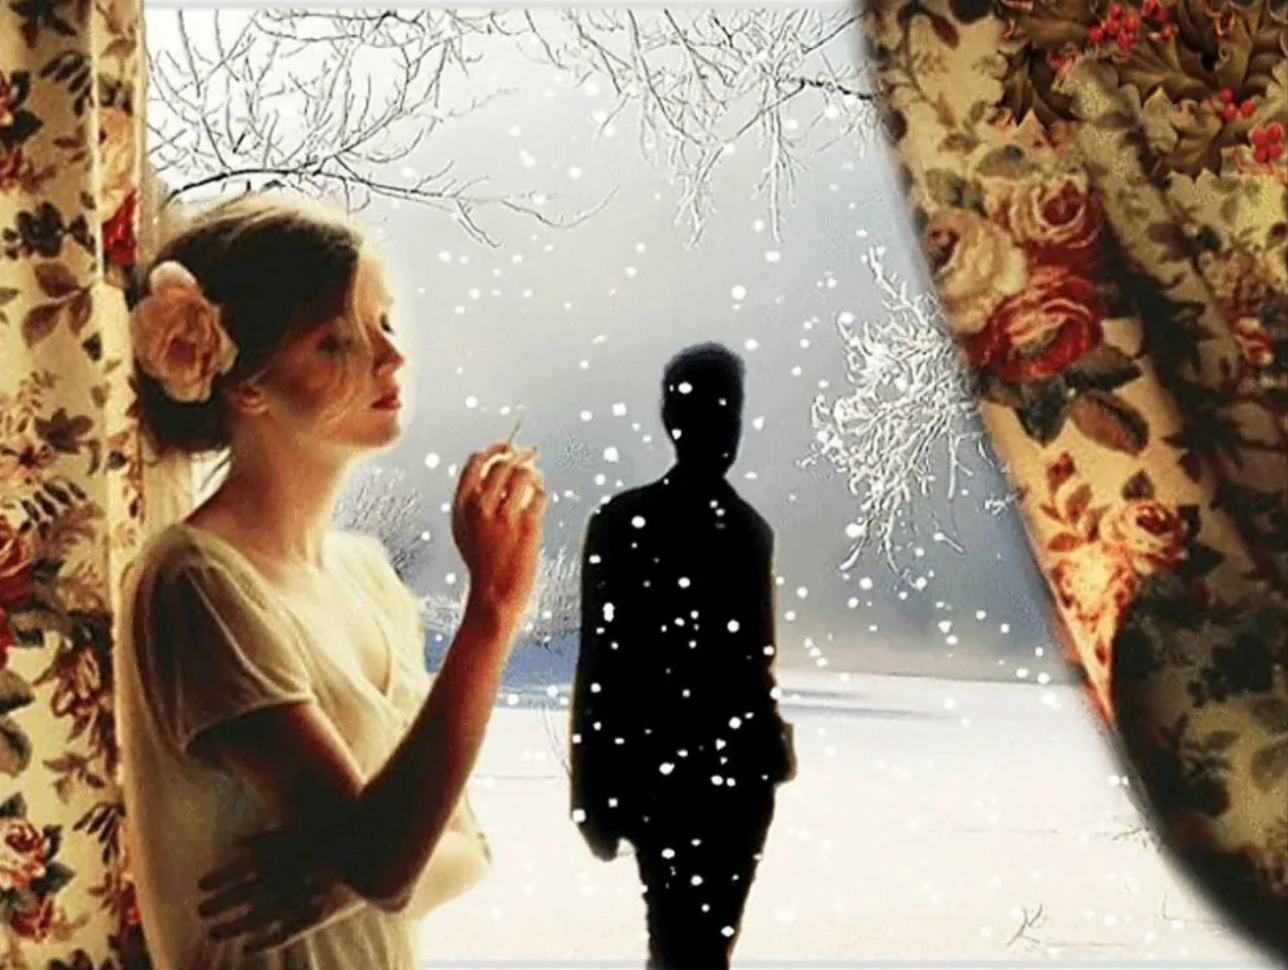 Он долго смотрел вслед уходящему. Ждет у окна. Зима расставание. Мужчина и женщина у окна. Расставание любовь зима.